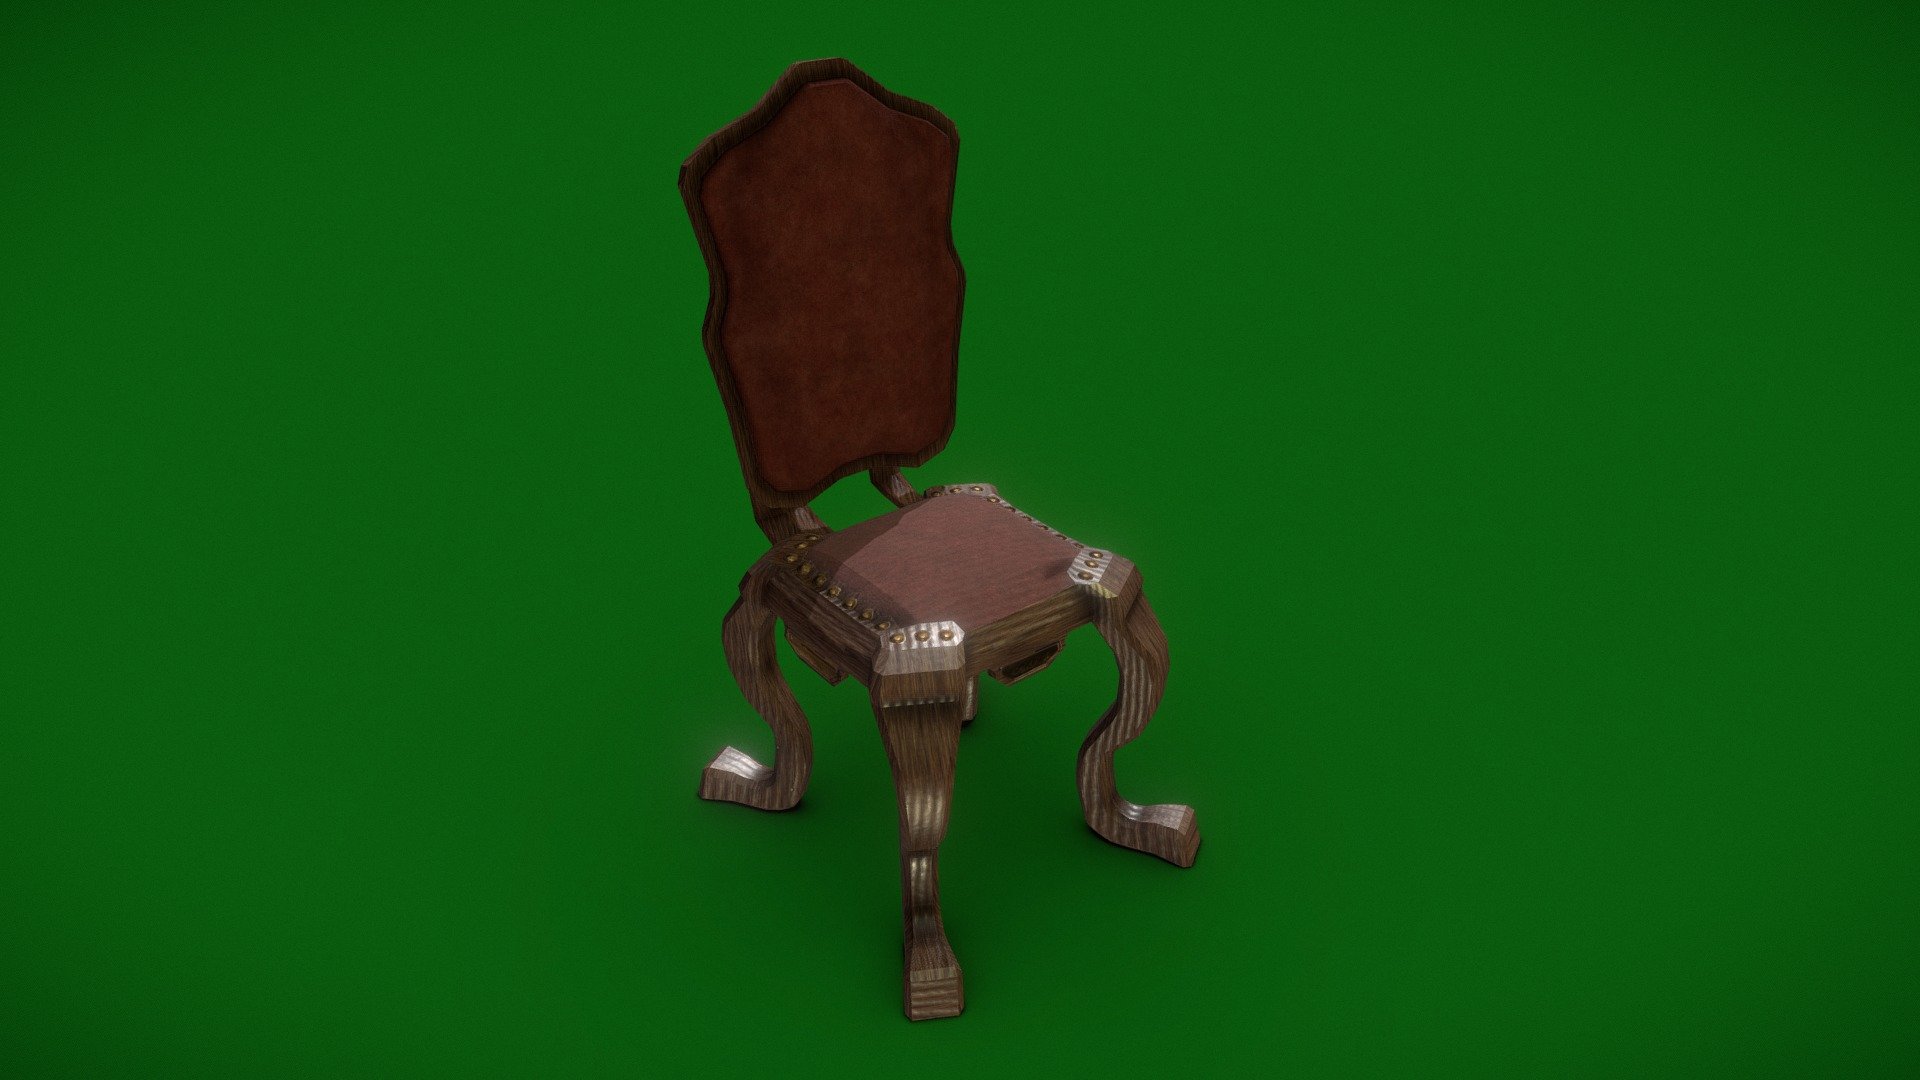 Victorian Chair Download Free 3d Model By Jamie Mcfarlane Jamiemcfarlane [9234d81] Sketchfab